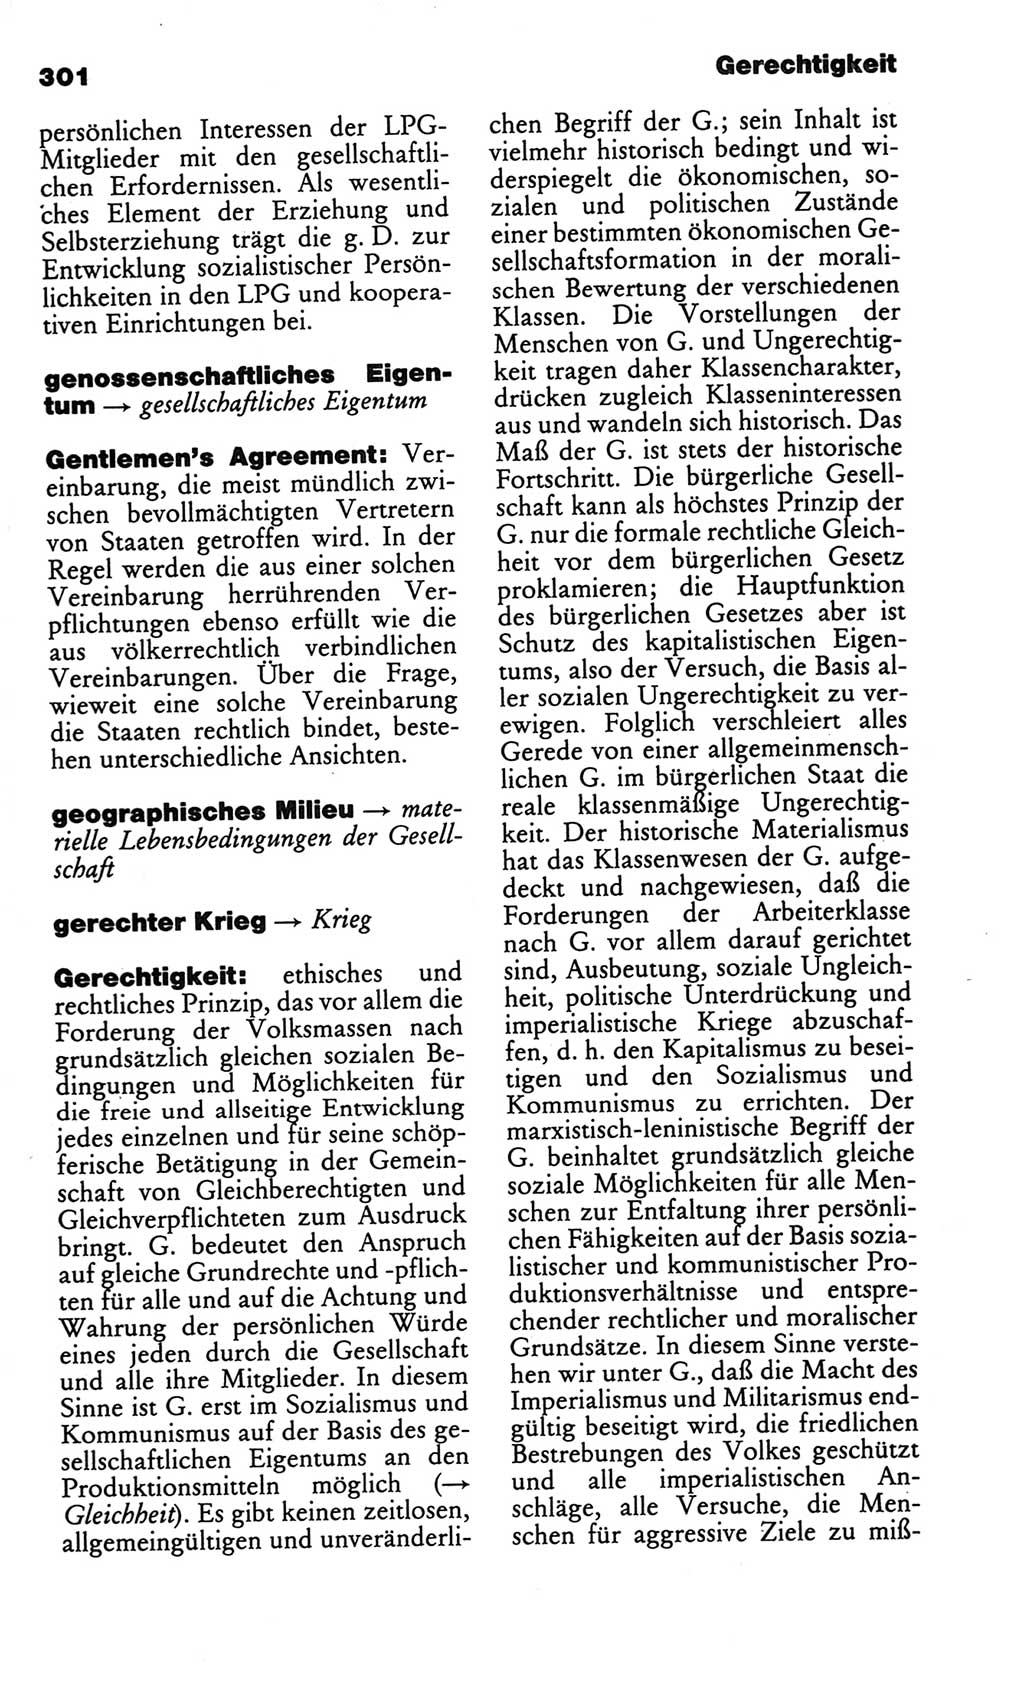 Kleines politisches Wörterbuch [Deutsche Demokratische Republik (DDR)] 1986, Seite 301 (Kl. pol. Wb. DDR 1986, S. 301)